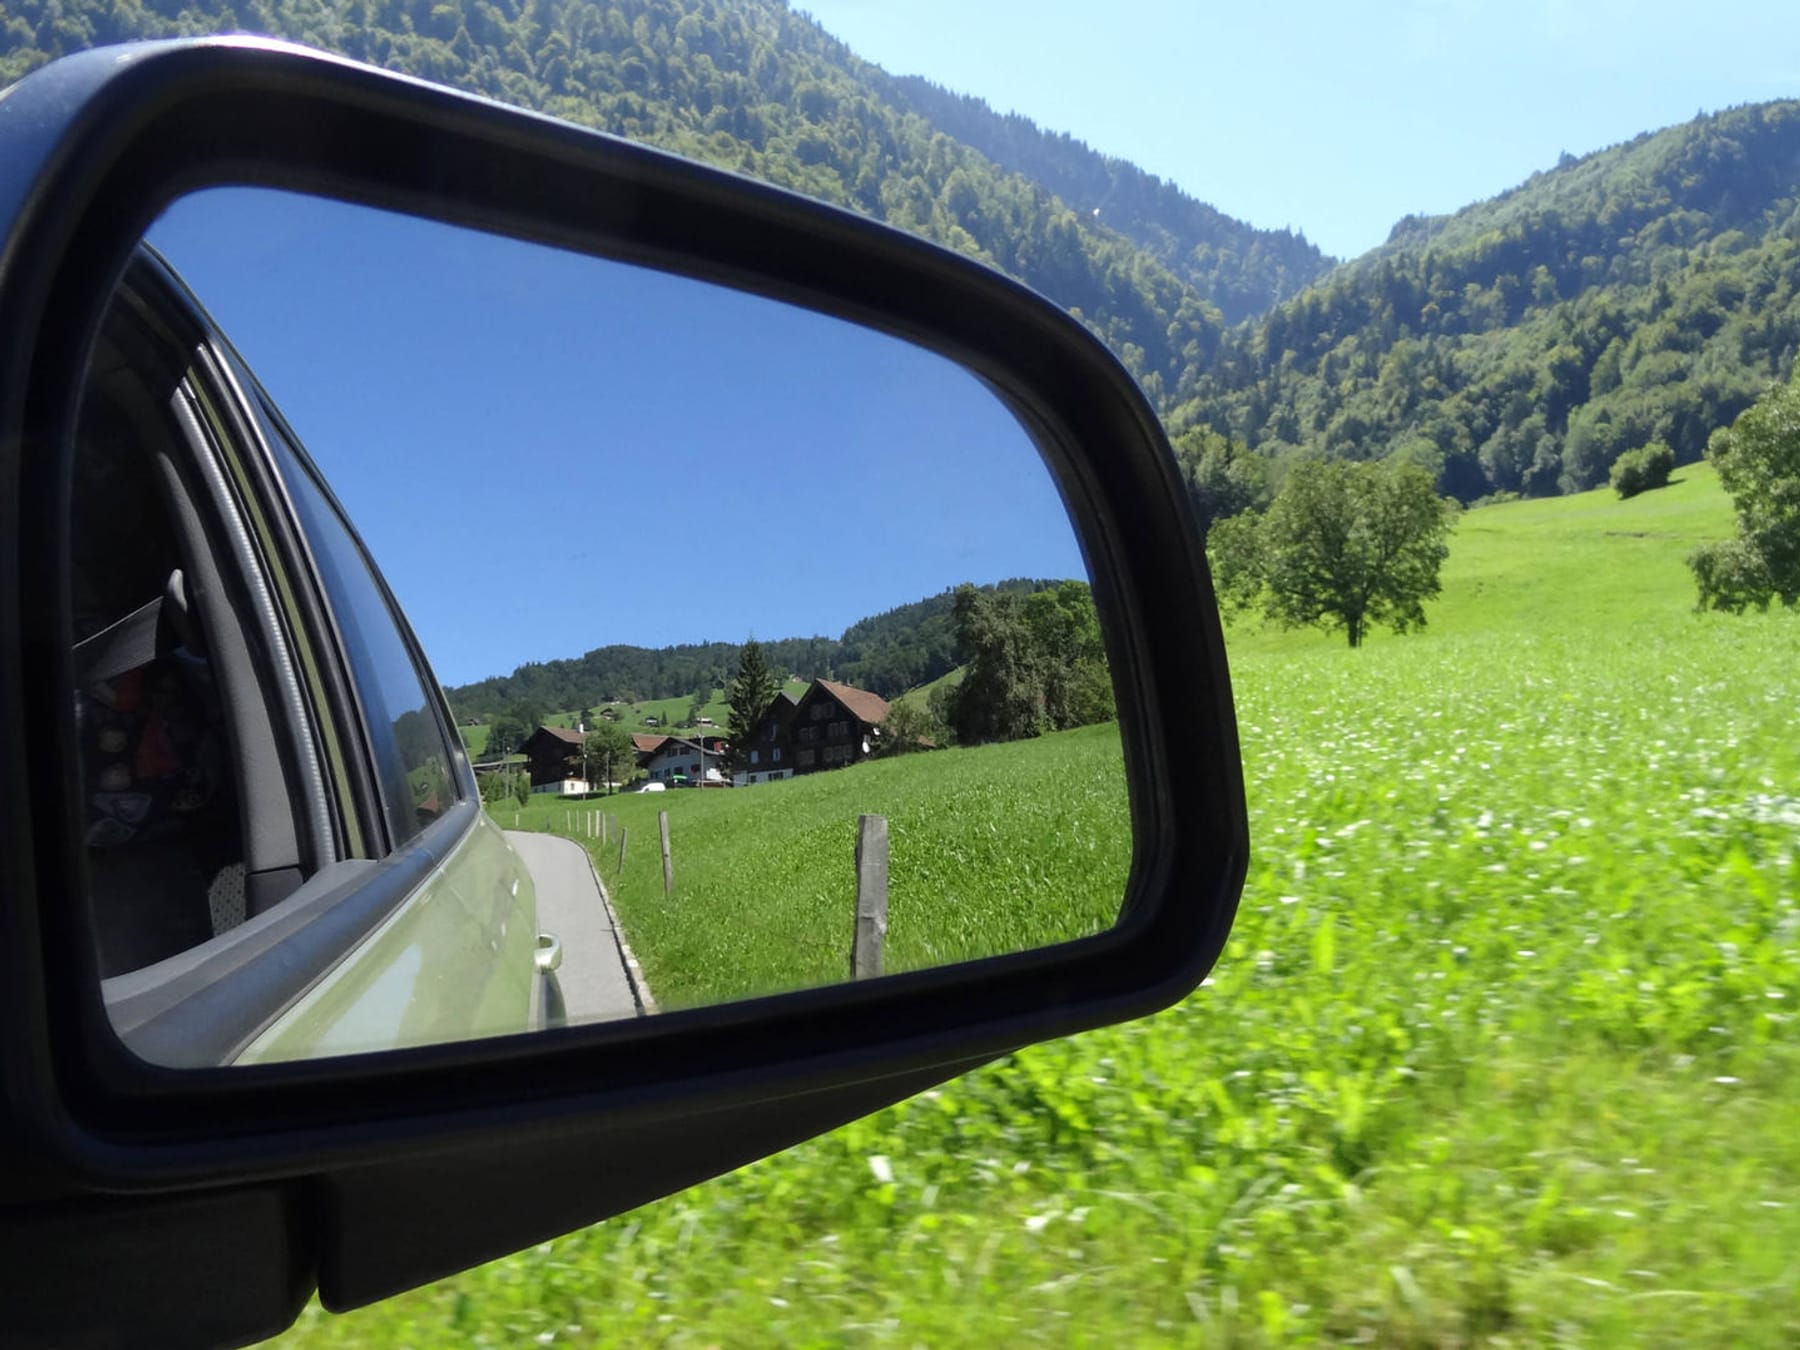 https://images.t-online.de/2022/06/92297352v2/242x5:1437x1078/fit-in/1800x0/beste-sicht-nach-hinten-mit-richtig-eingestellten-spiegeln-fahren-sie-deutlich-sicherer.jpg